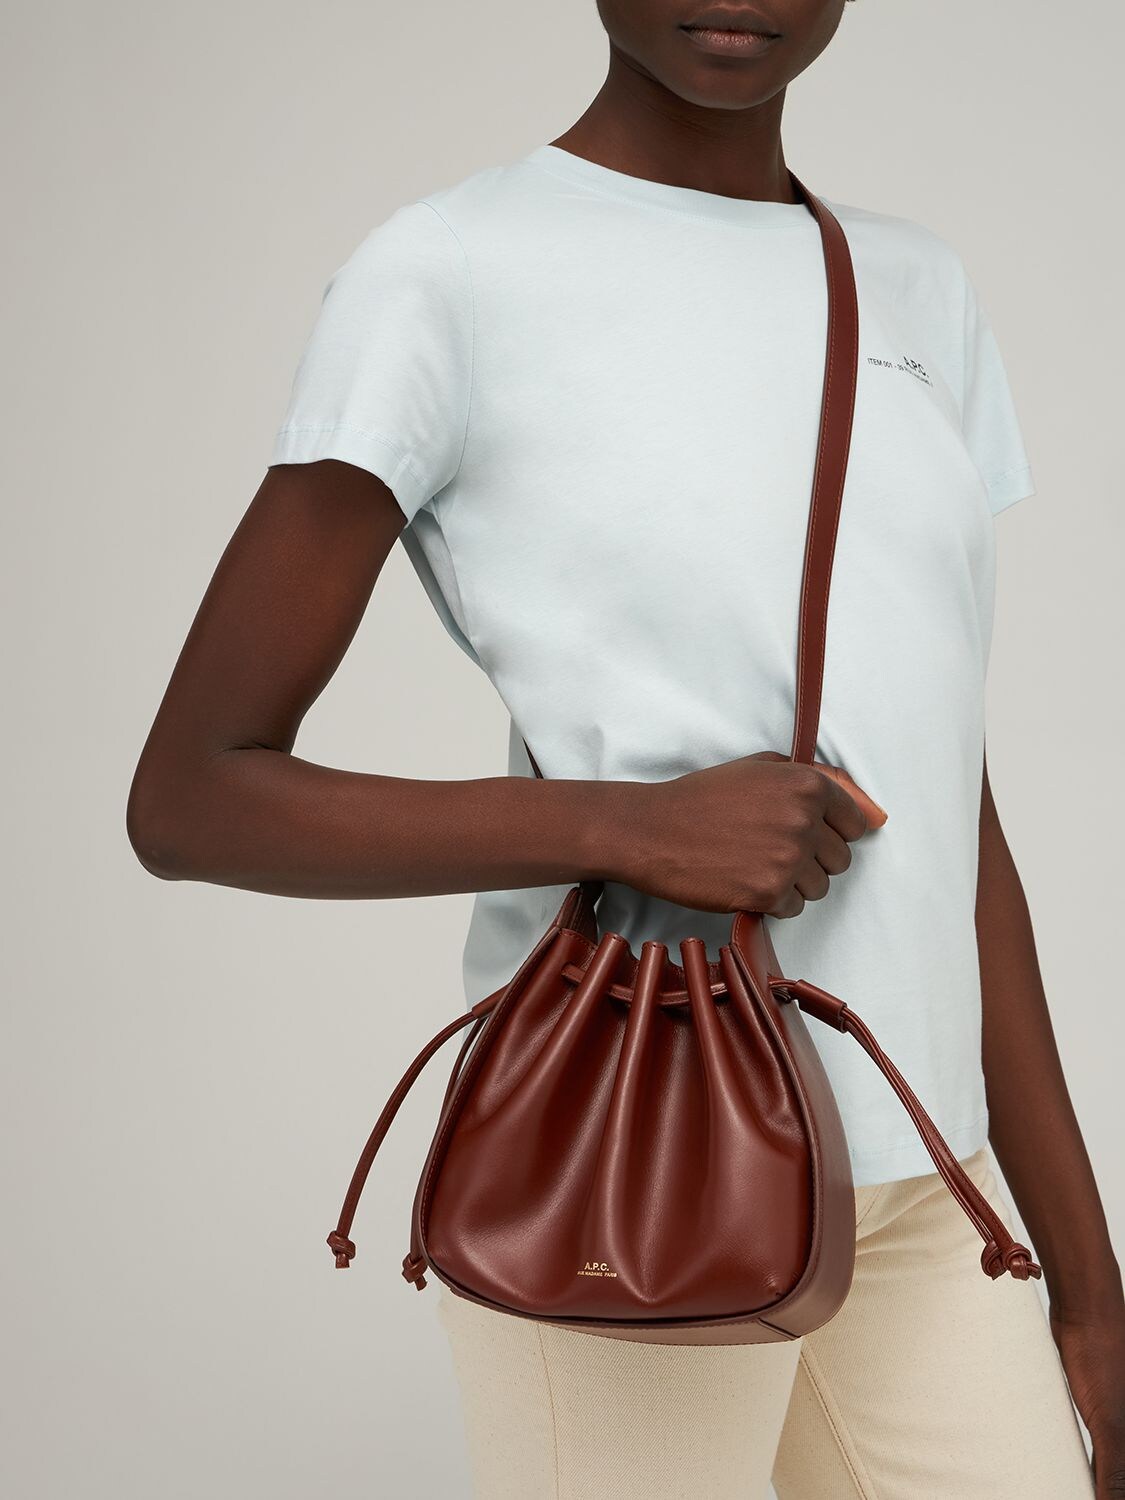 Buy A.p.c. Ella Mini Leather Shoulder Bag - Black At 30% Off